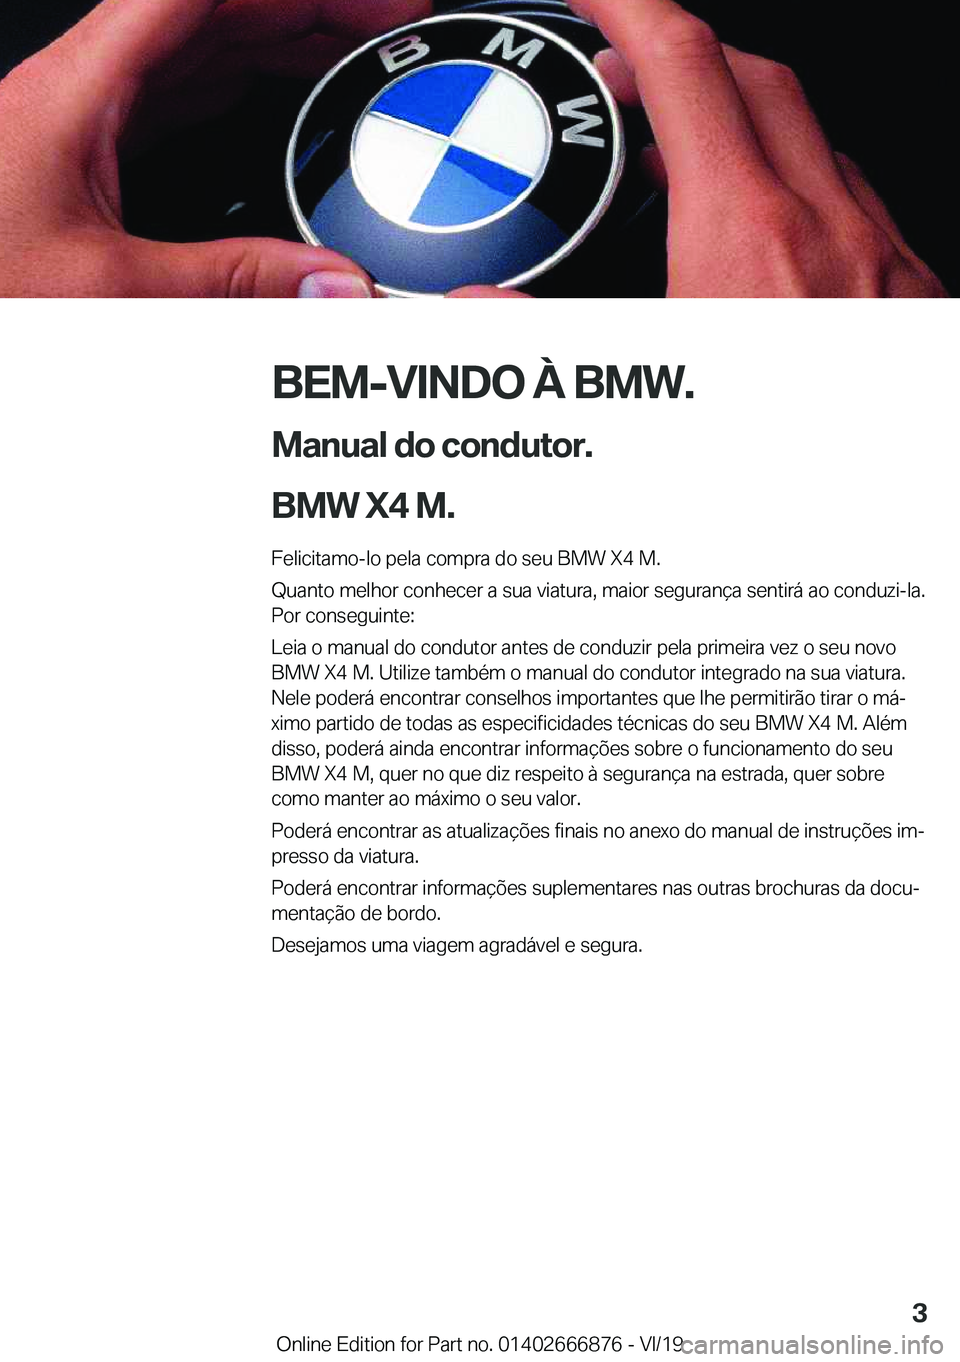 BMW X4 M 2020  Manual do condutor (in Portuguese) �B�E�M�-�V�I�N�D�O��À��B�M�W�.
�M�a�n�u�a�l��d�o��c�o�n�d�u�t�o�r�.
�B�M�W��X�4��M�. �F�e�l�i�c�i�t�a�m�o�-�l�o��p�e�l�a��c�o�m�p�r�a��d�o��s�e�u��B�M�W��X�4��M�.
�Q�u�a�n�t�o��m�e�l�h�